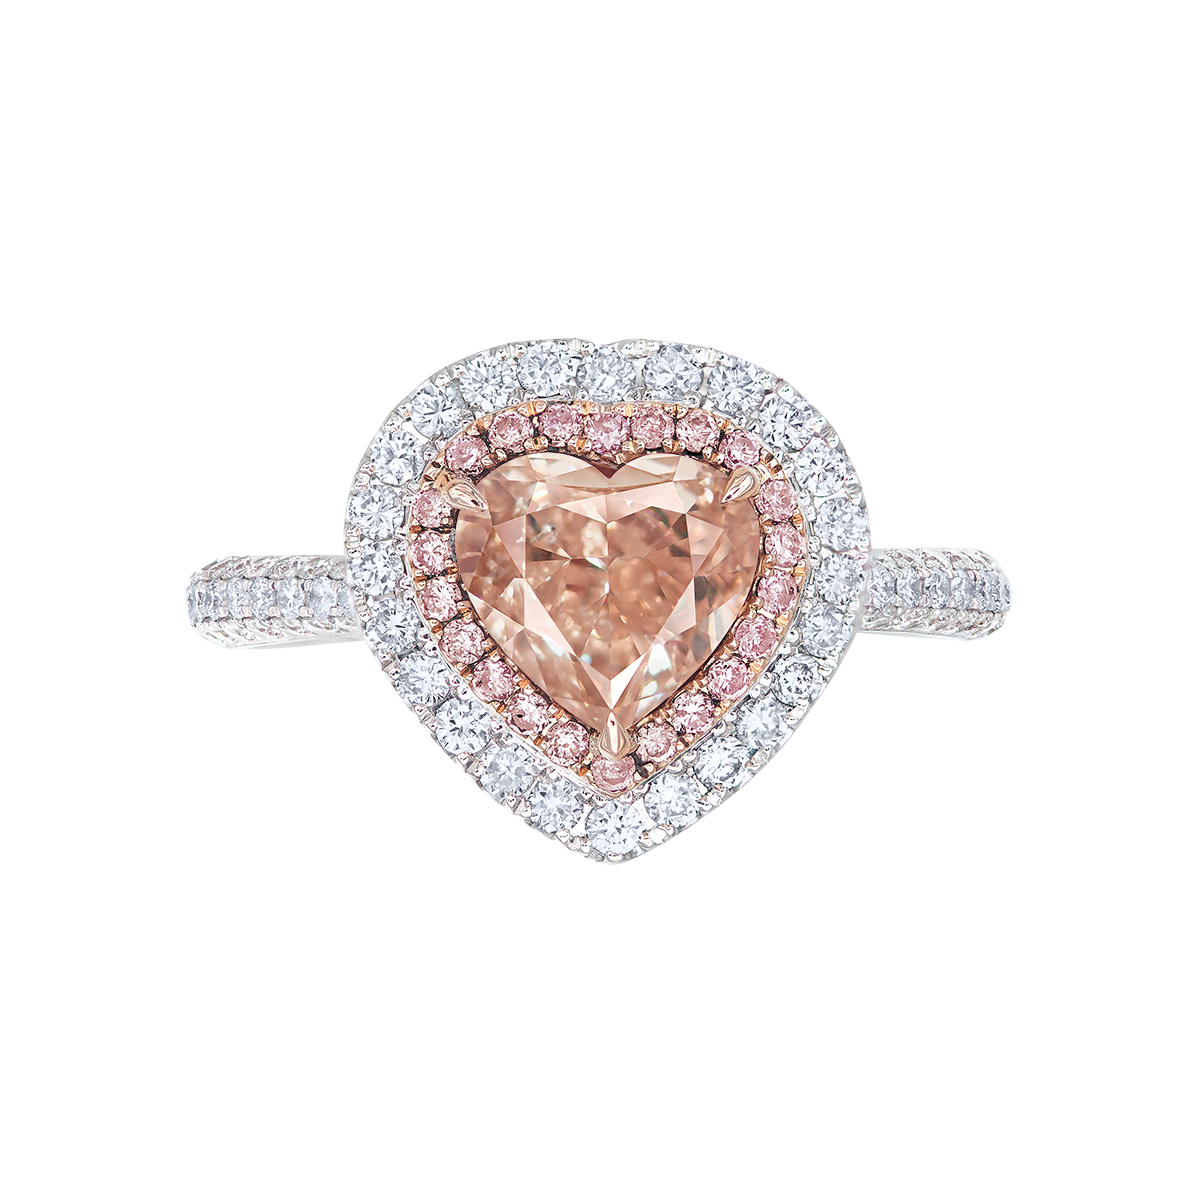 2.01克拉 粉棕鑽鑽戒
Fancy Pinkish Brown
Colored Diamond and
Diamond Ring